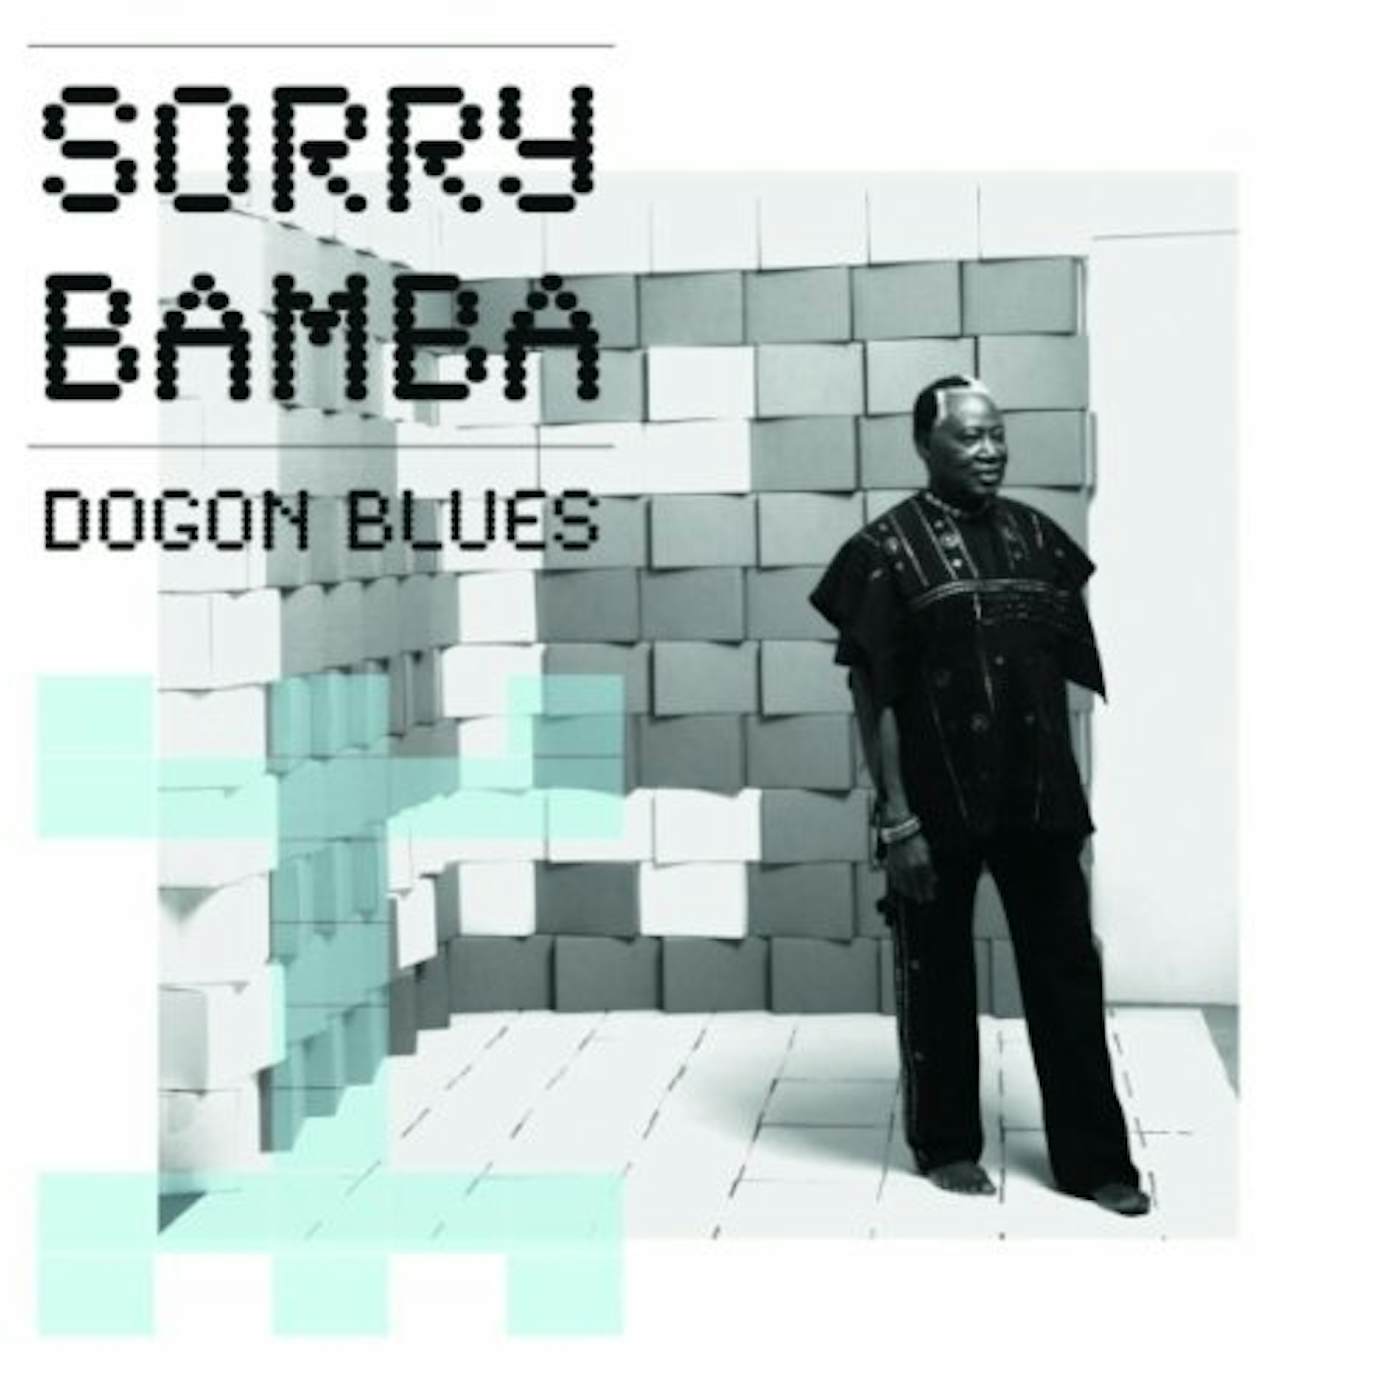 Sorry Bamba DOGON BLUES CD